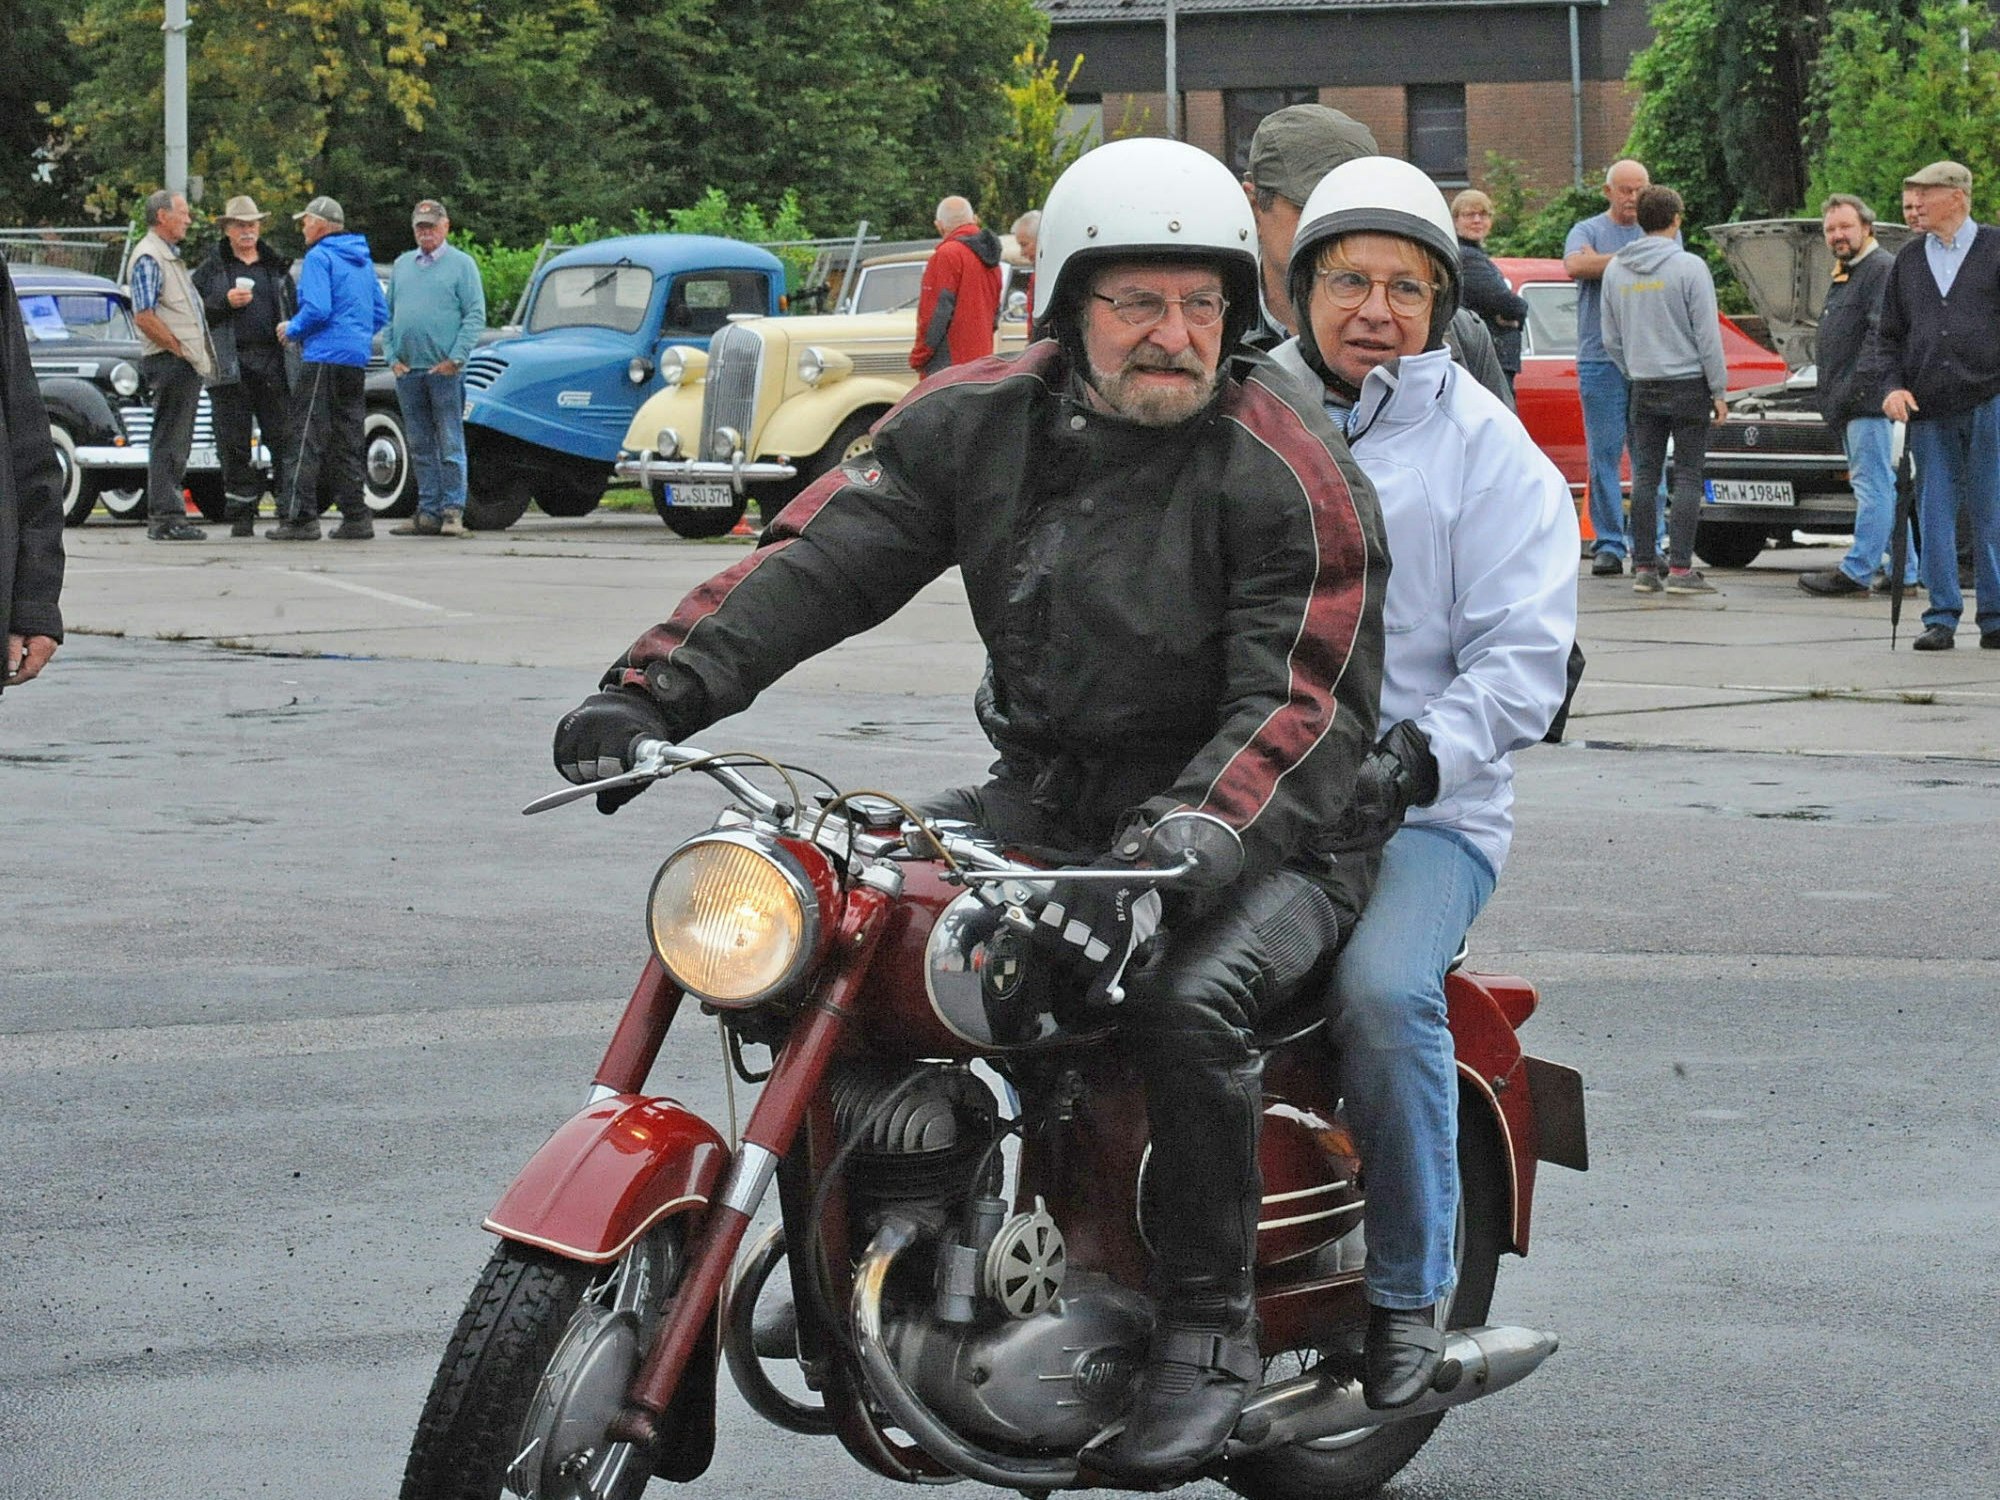 Pattscheider Eindrücke: Traktor-Fan Erwin Herforth, Besucher auf dem Motorrad – und Olaf Küster mit seinen Enkeln Jonathan und Philipp.